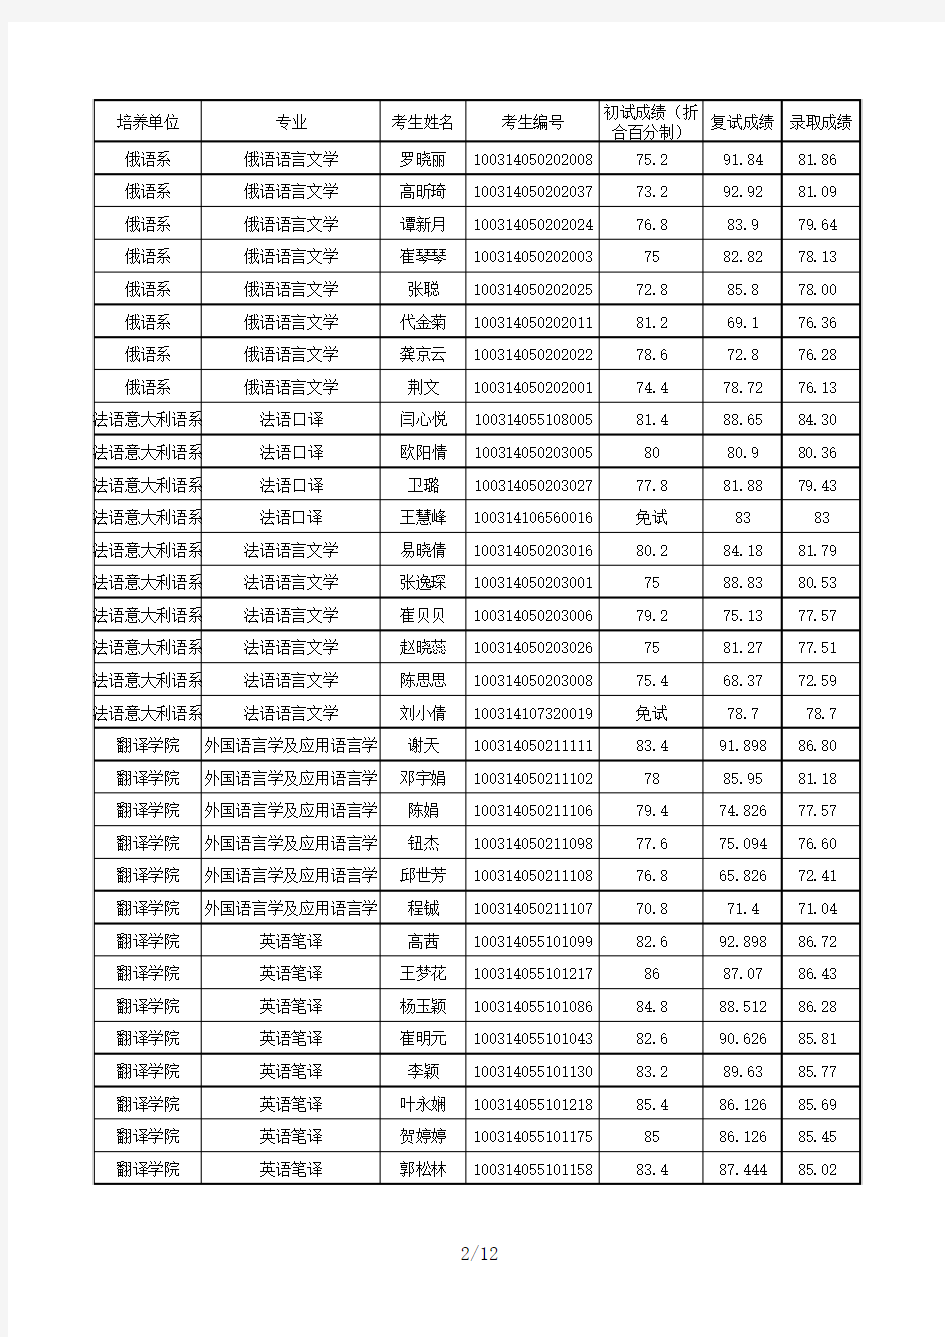 北京第二外国语学院2014年研究生入学考试拟录取名单